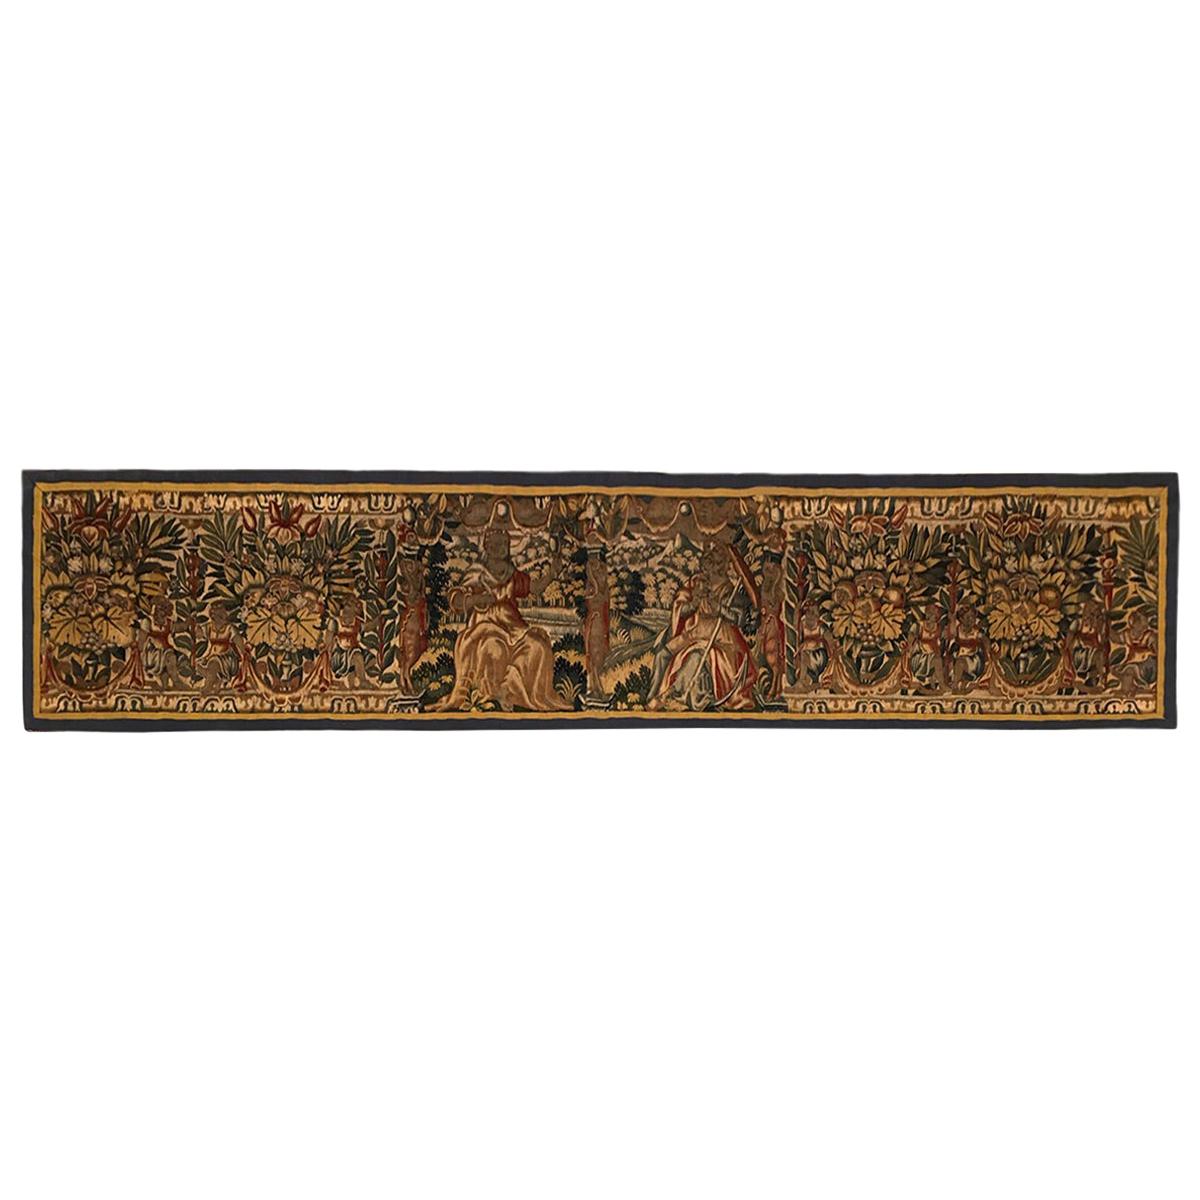 Panneau de tapisserie historique de Bruxelles du 17ème siècle